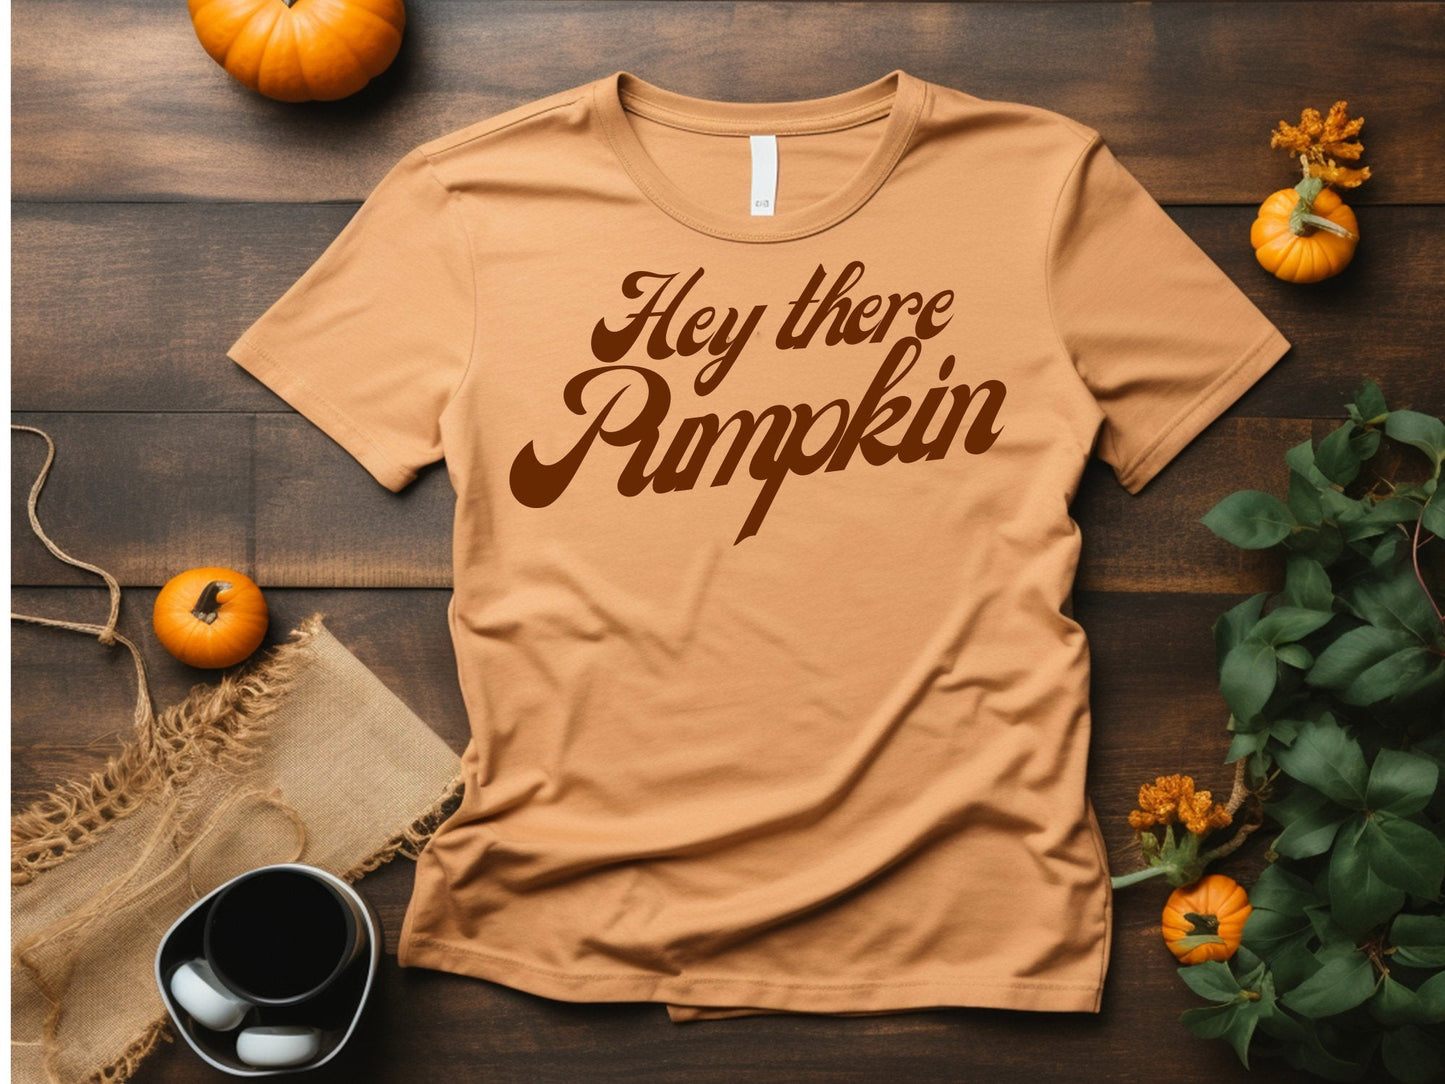 Pumpkin shirt Halloween tshirt Hey there pumpkin Spooky Season tshirt Halloween Fall apparel, funny shirt, Halloween school party - SBS T Shop